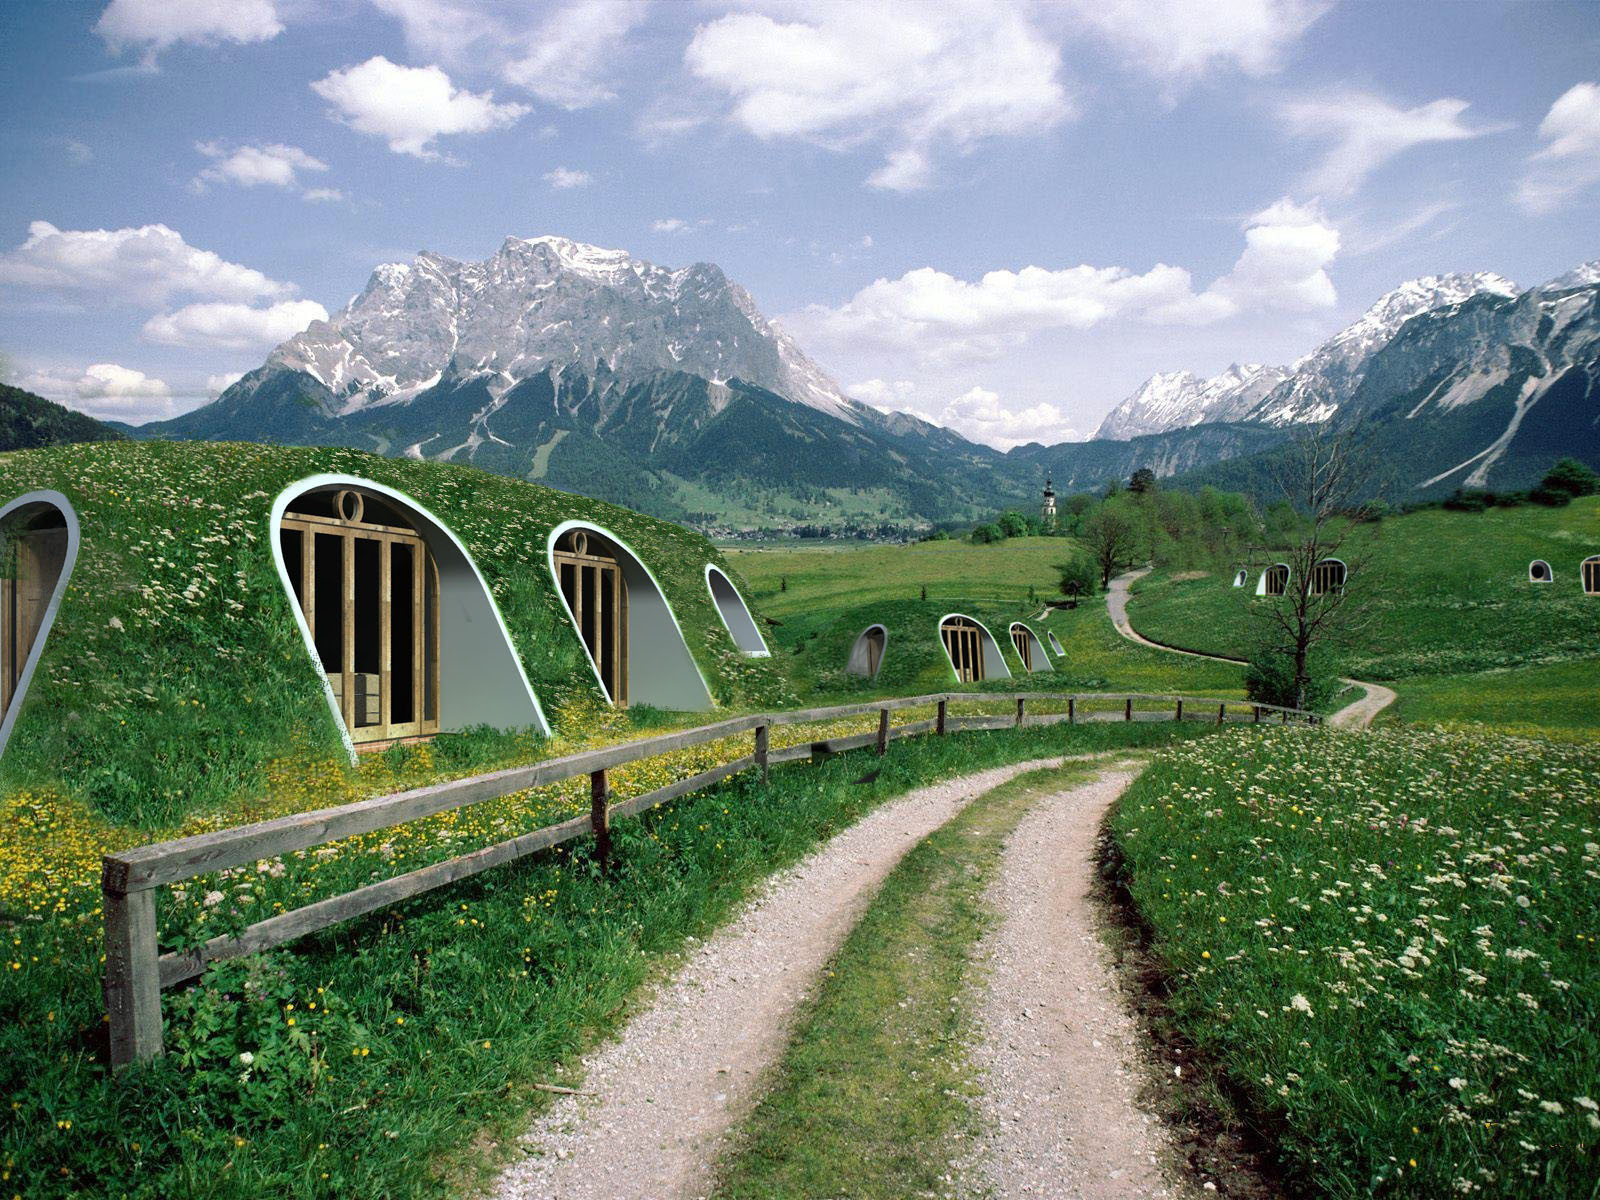 La maison de hobbit accessible et respectueuse de l’environnement